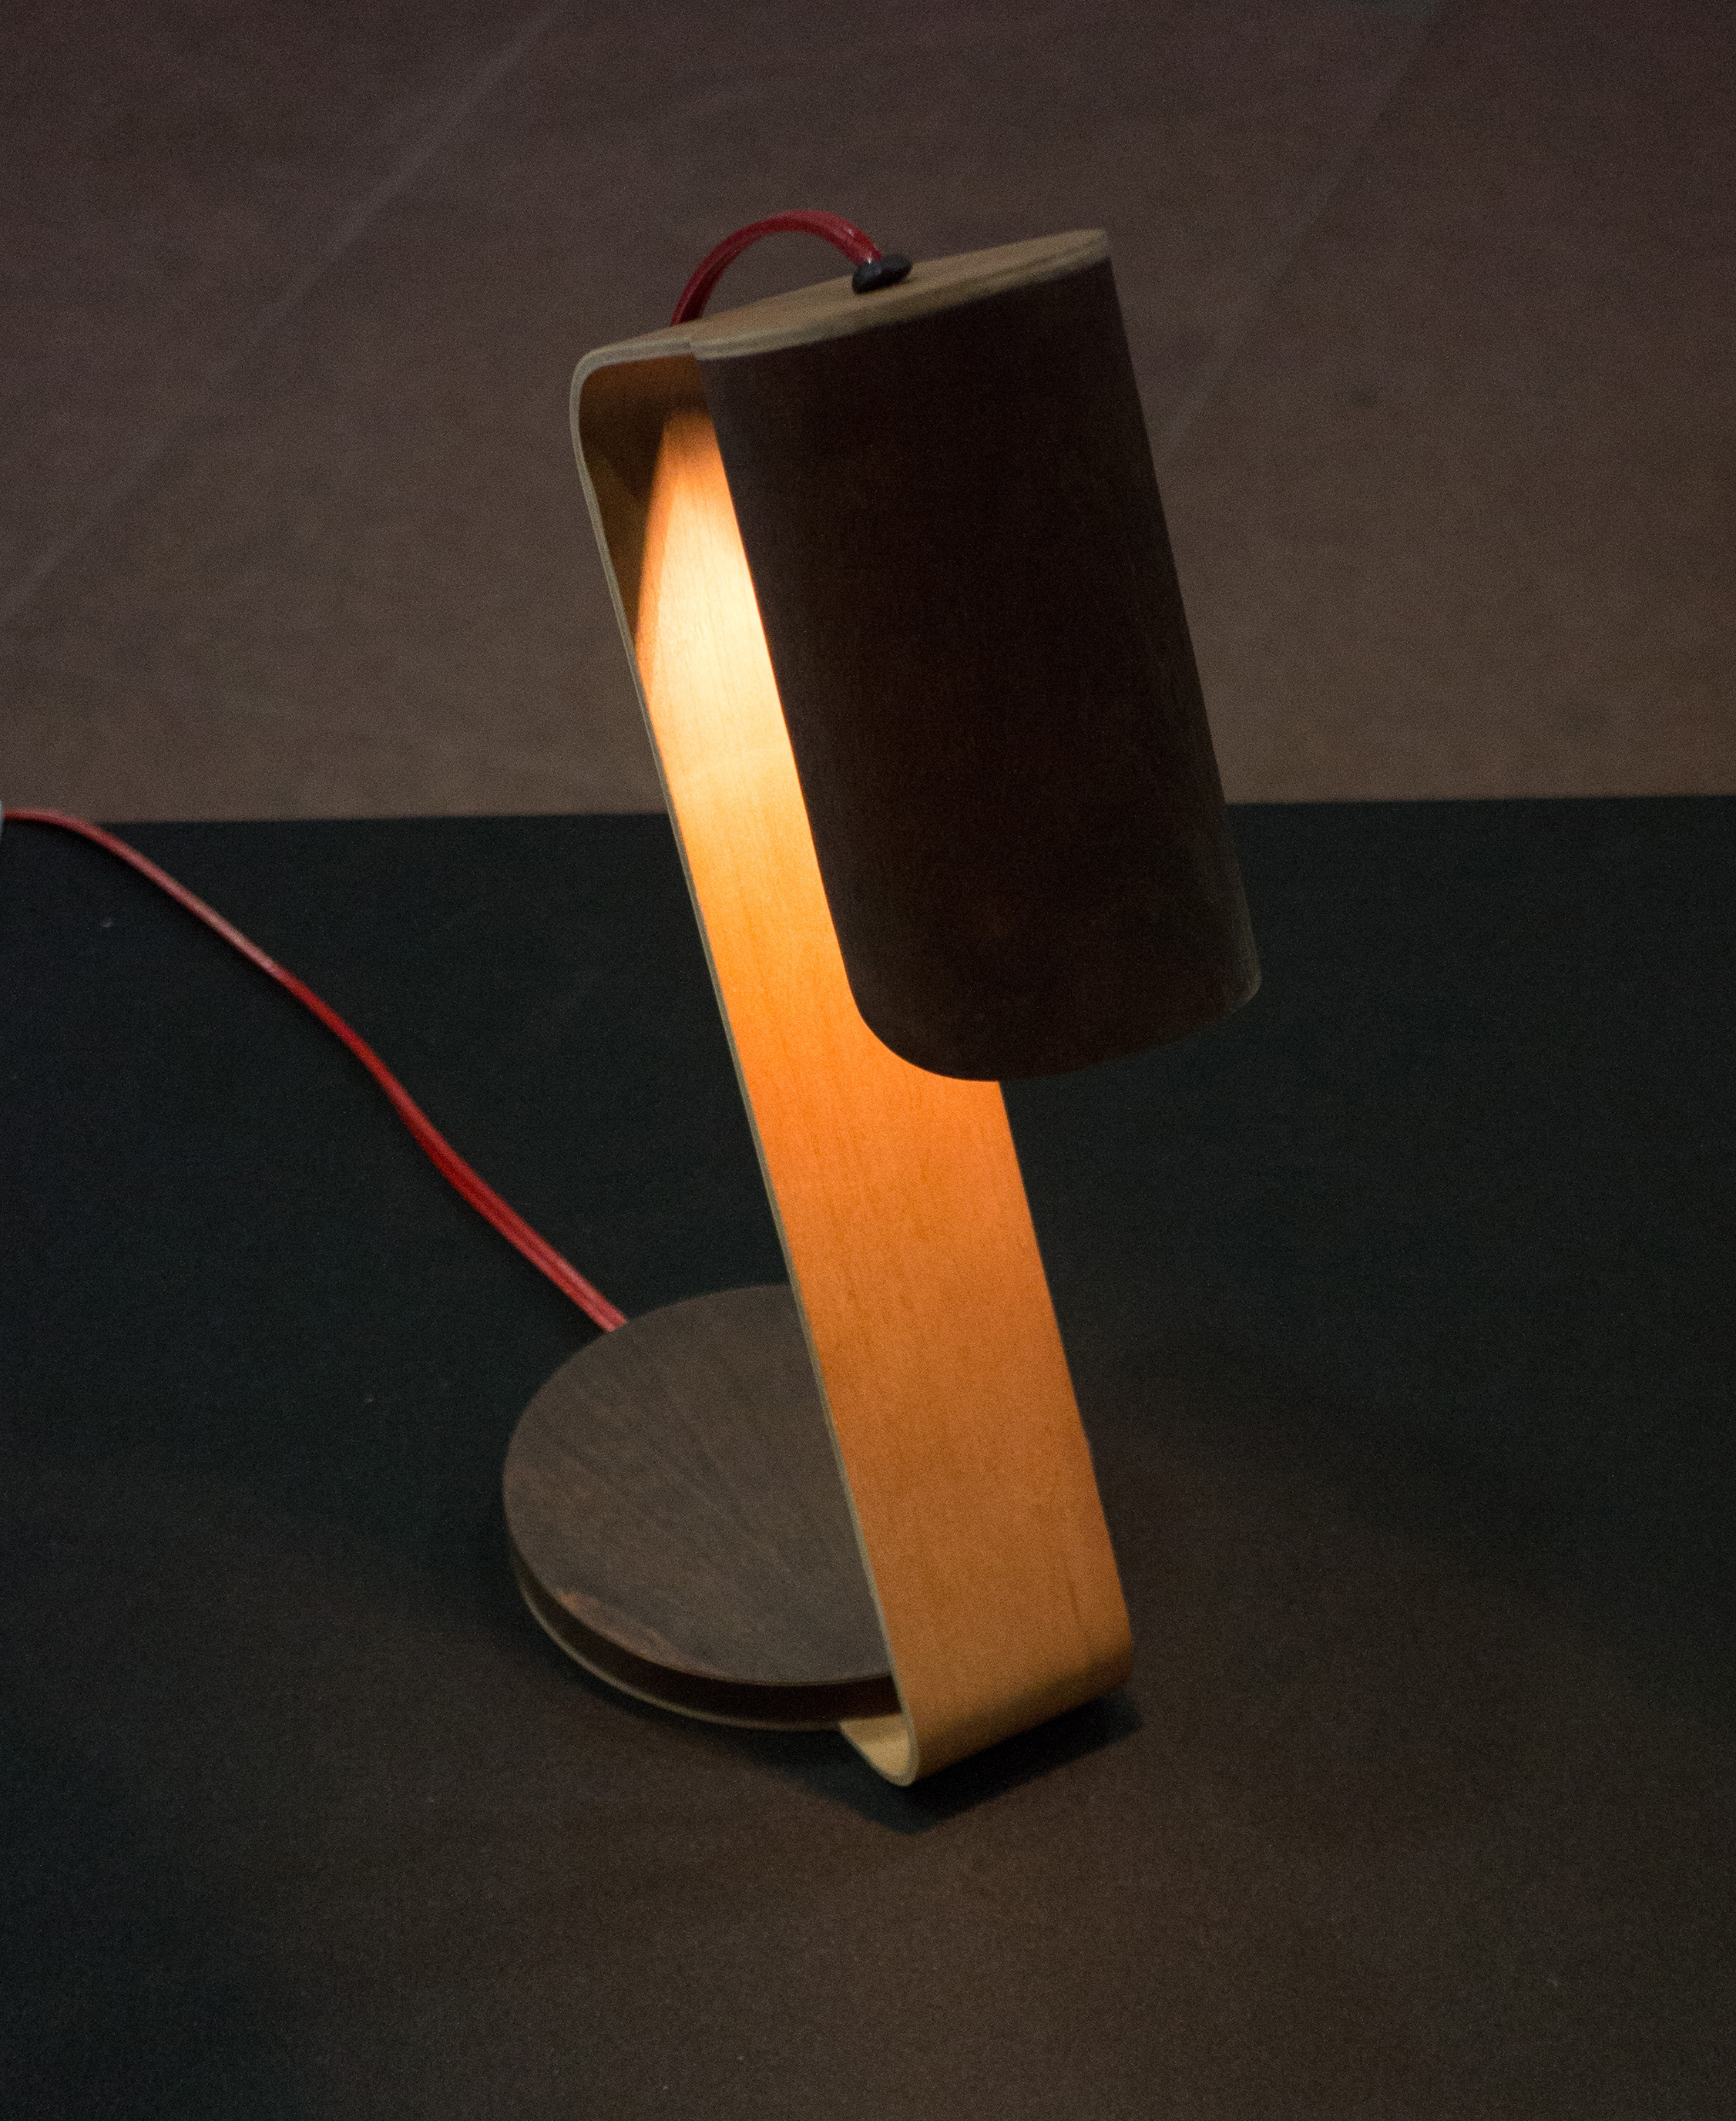 Mung, Desk Lamp at NTU ADM Portfolio